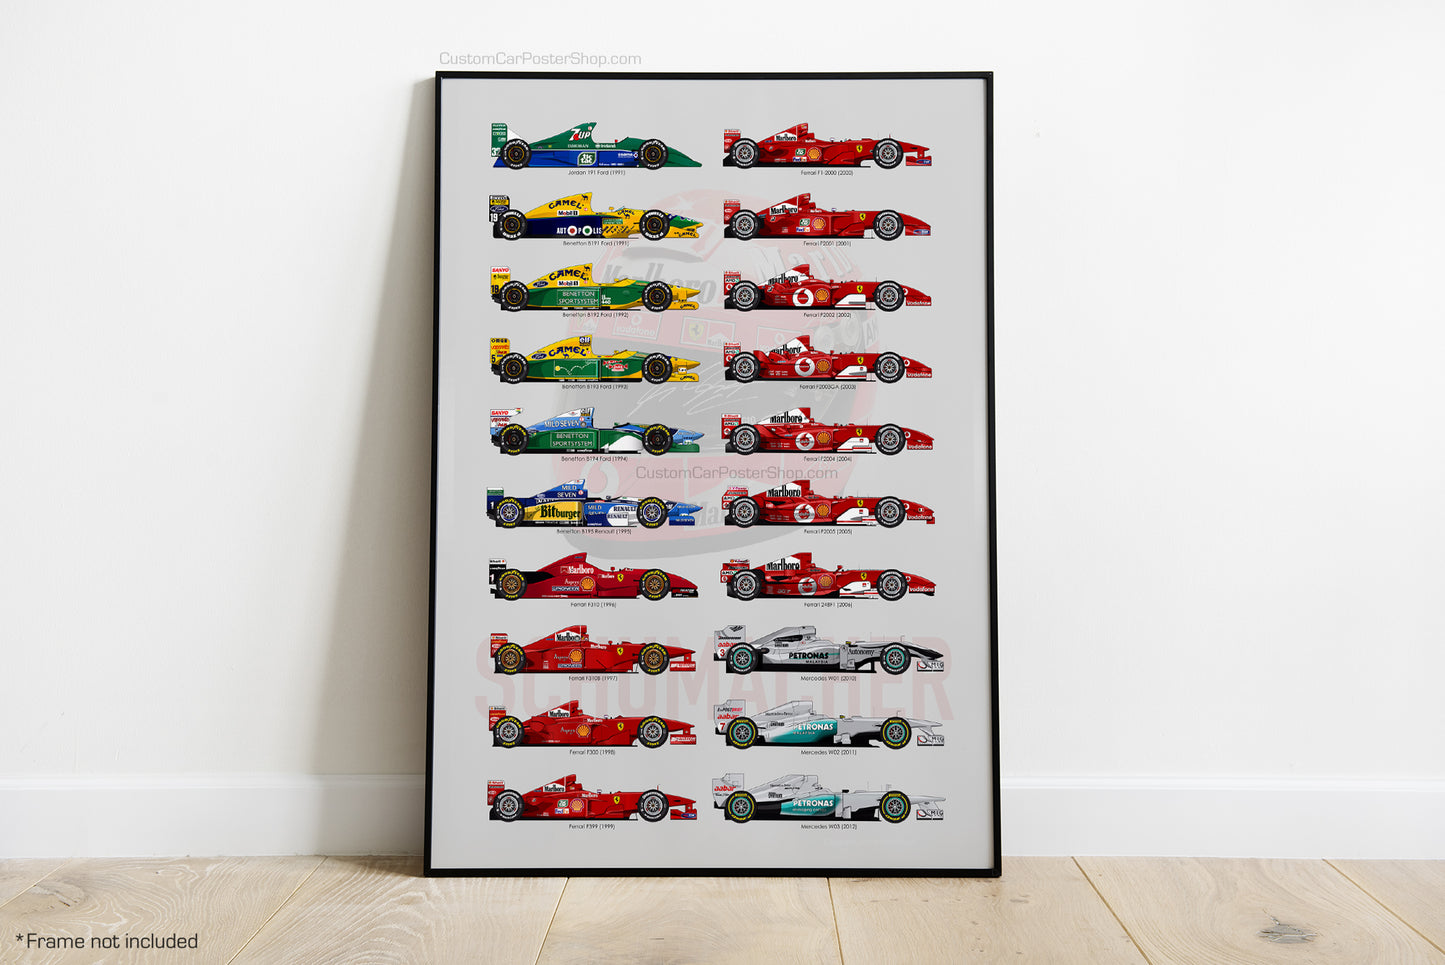 Michael Schumacher F1 Tribute Wall Art (Benetton, Ferrari, Mercedes, Jordan) - F1 Wall Art